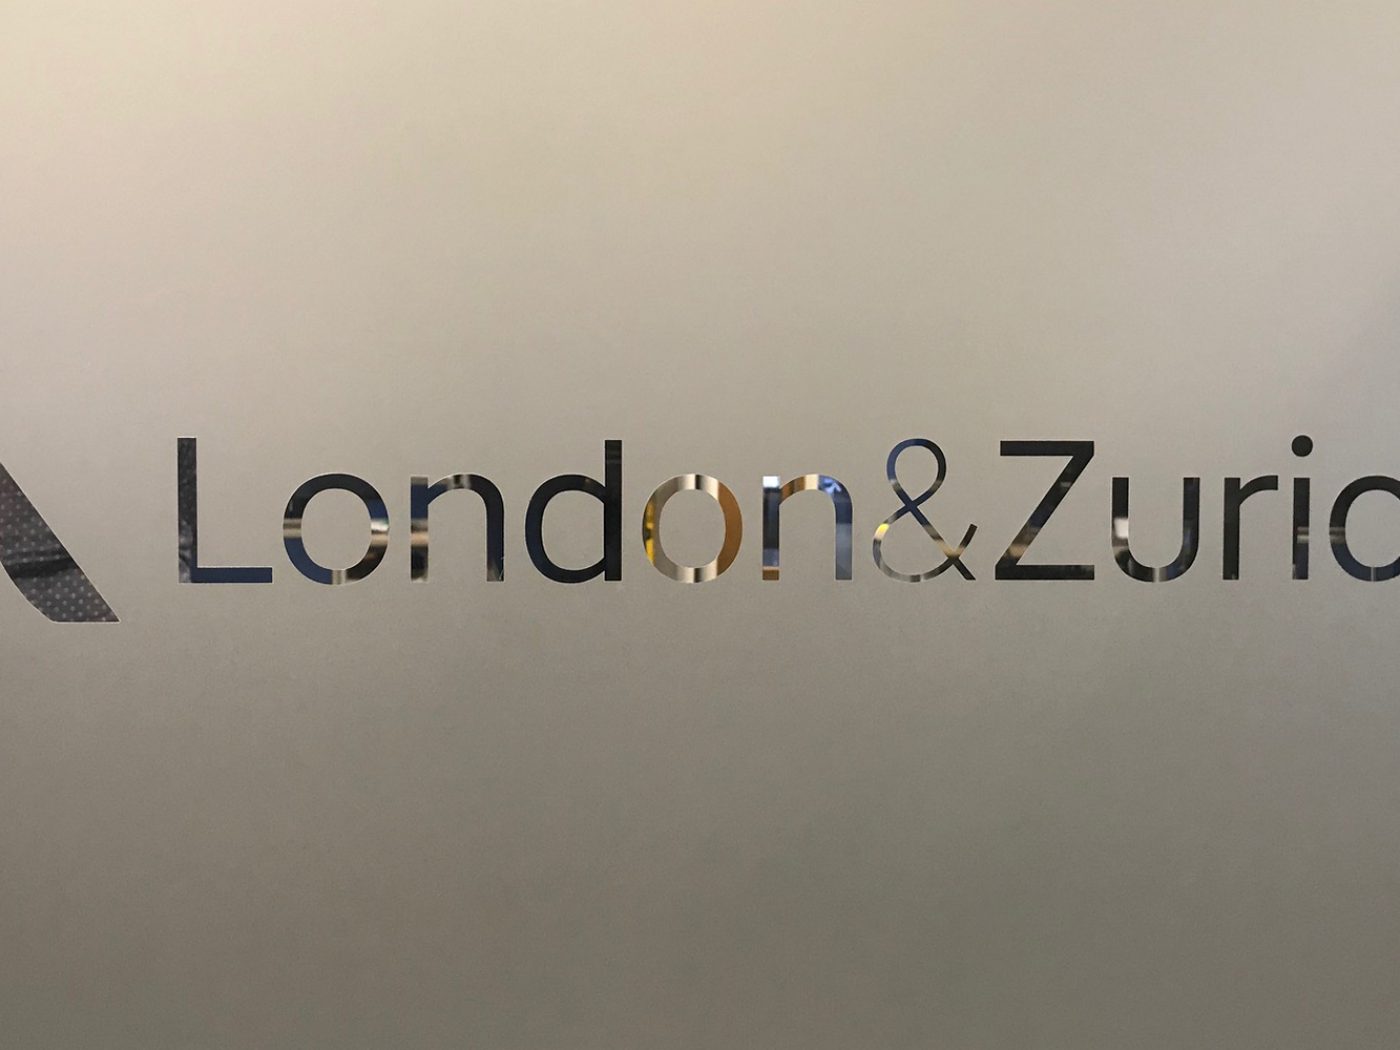 A London & Zurich office branding sign.